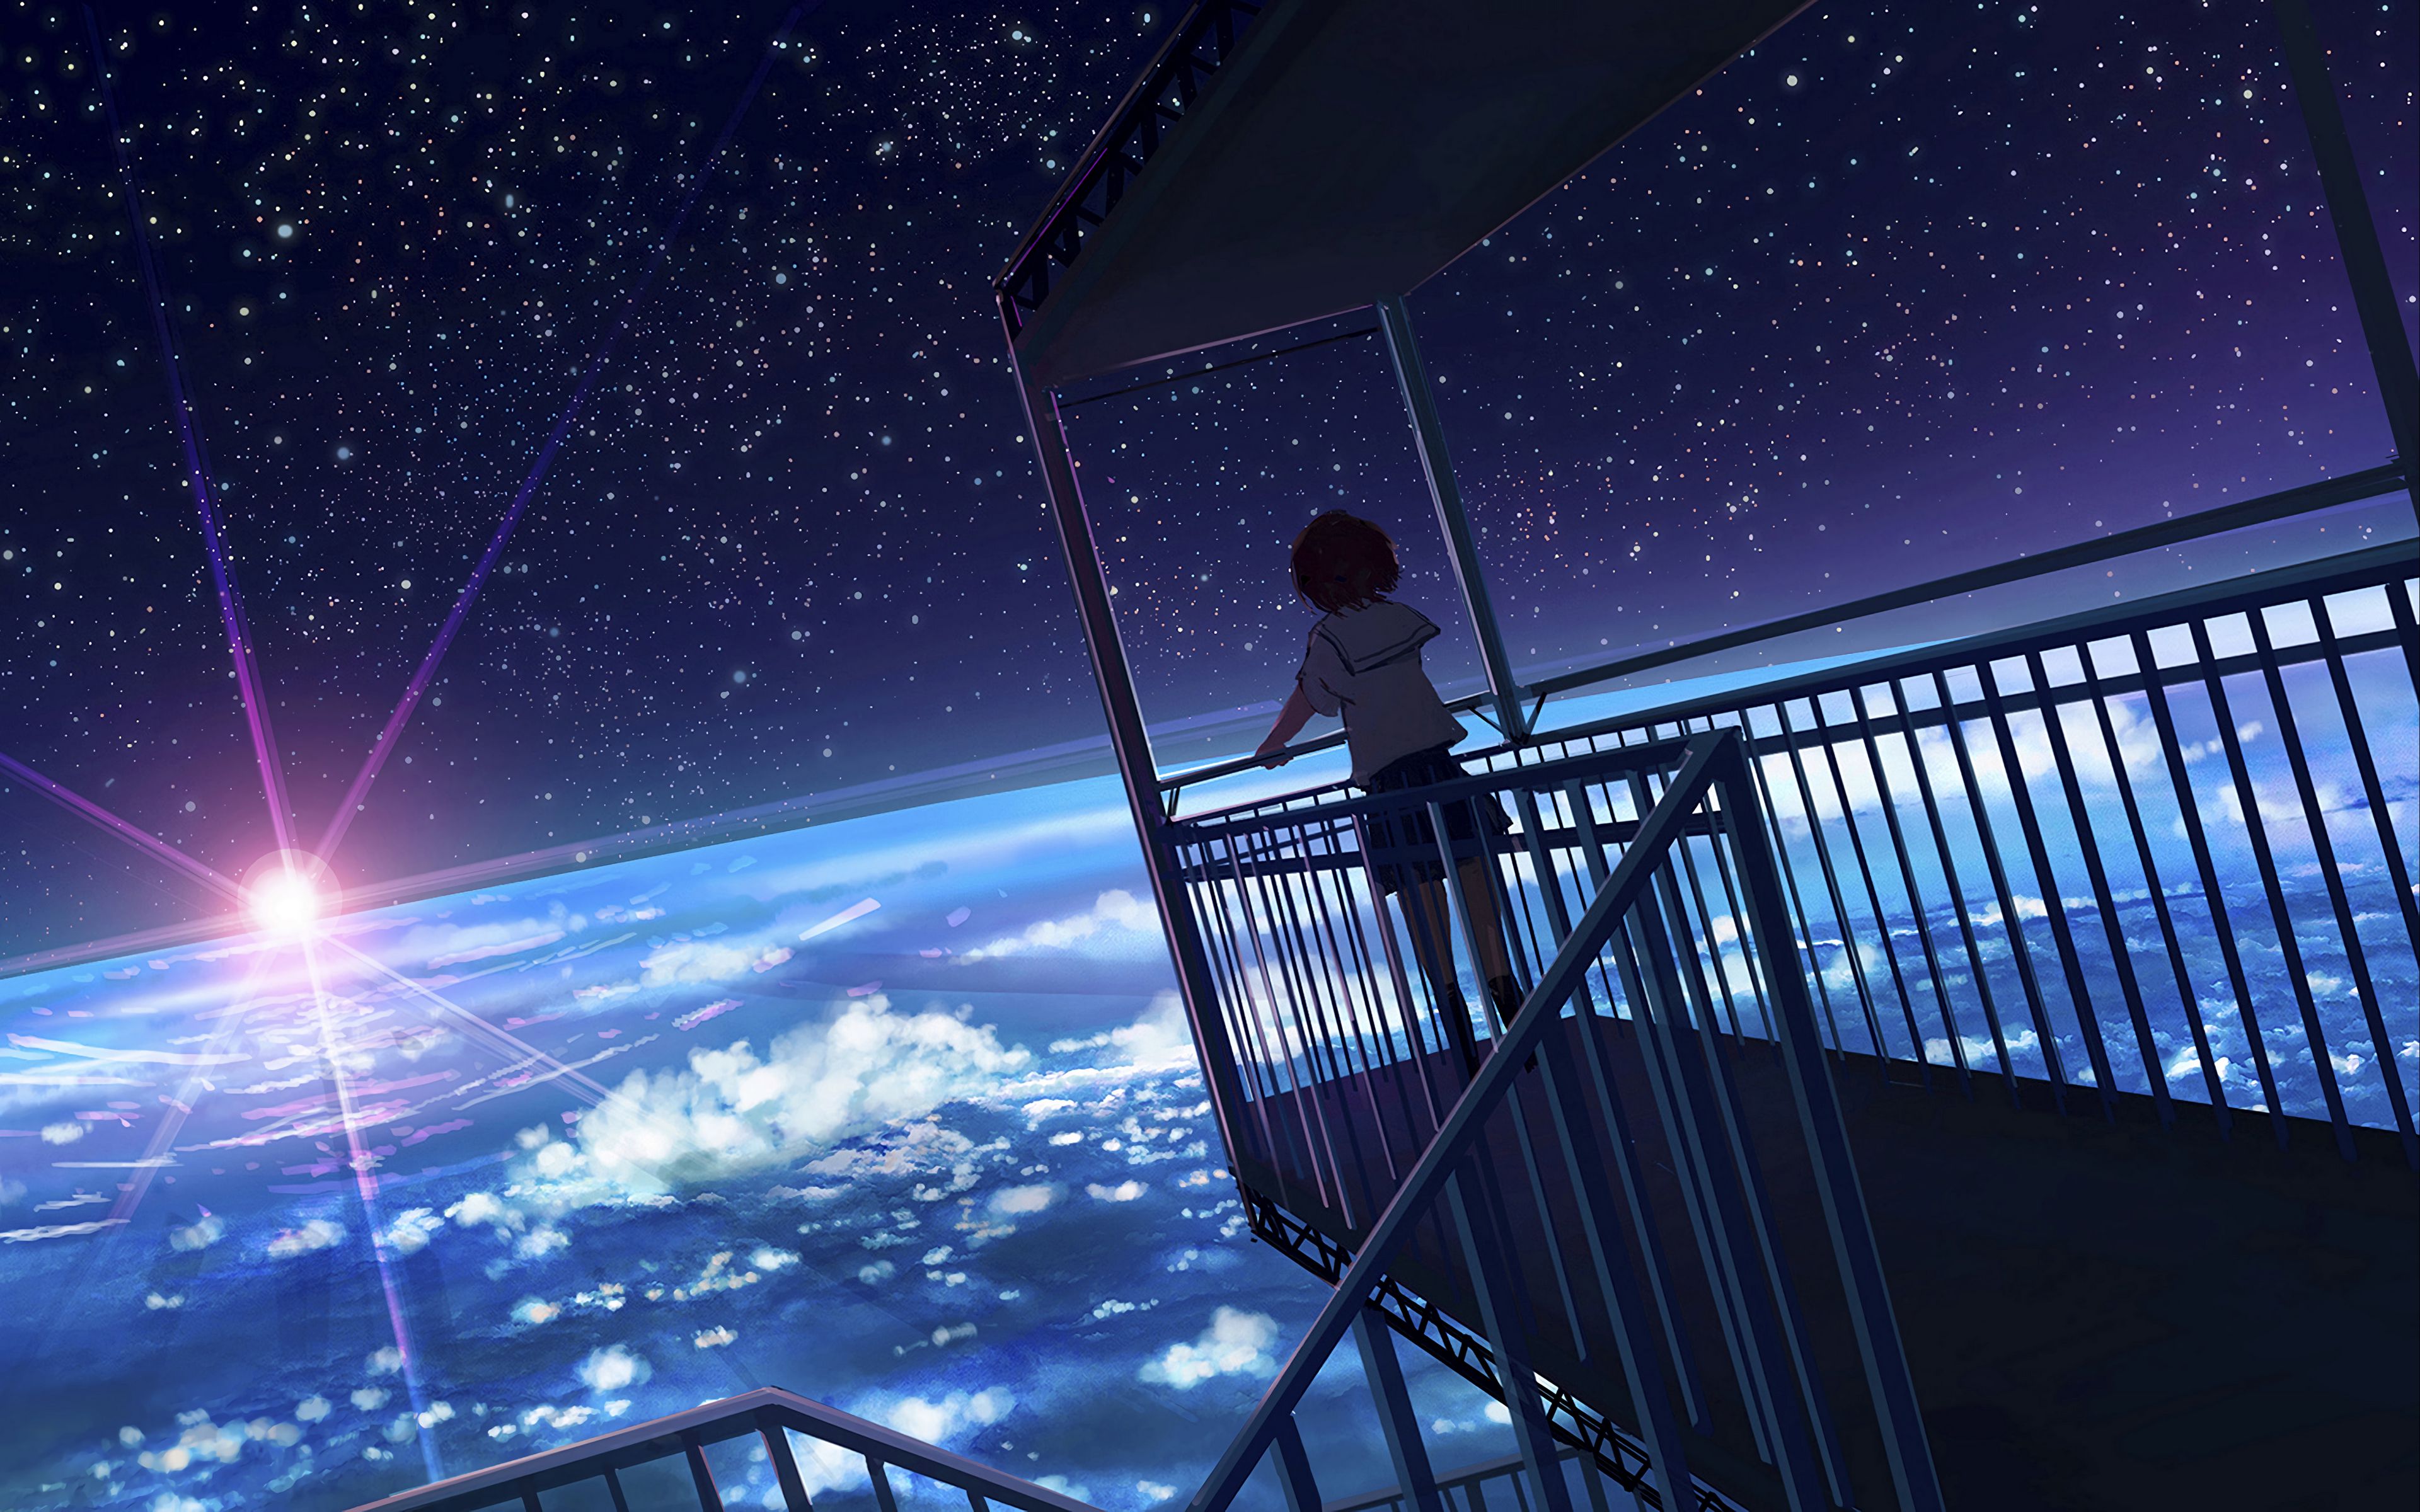 Hình nền anime về không gian Trái Đất đang chờ đợi bạn. Những hình ảnh đầy nghệ thuật này sẽ cho bạn suy nghĩ về địa vị của con người trong thế giới rộng lớn này. Bạn sẽ cảm thấy bị cuốn hút ngay lập tức khi xem những hình nền Anime này. Nhấn vào để khám phá.